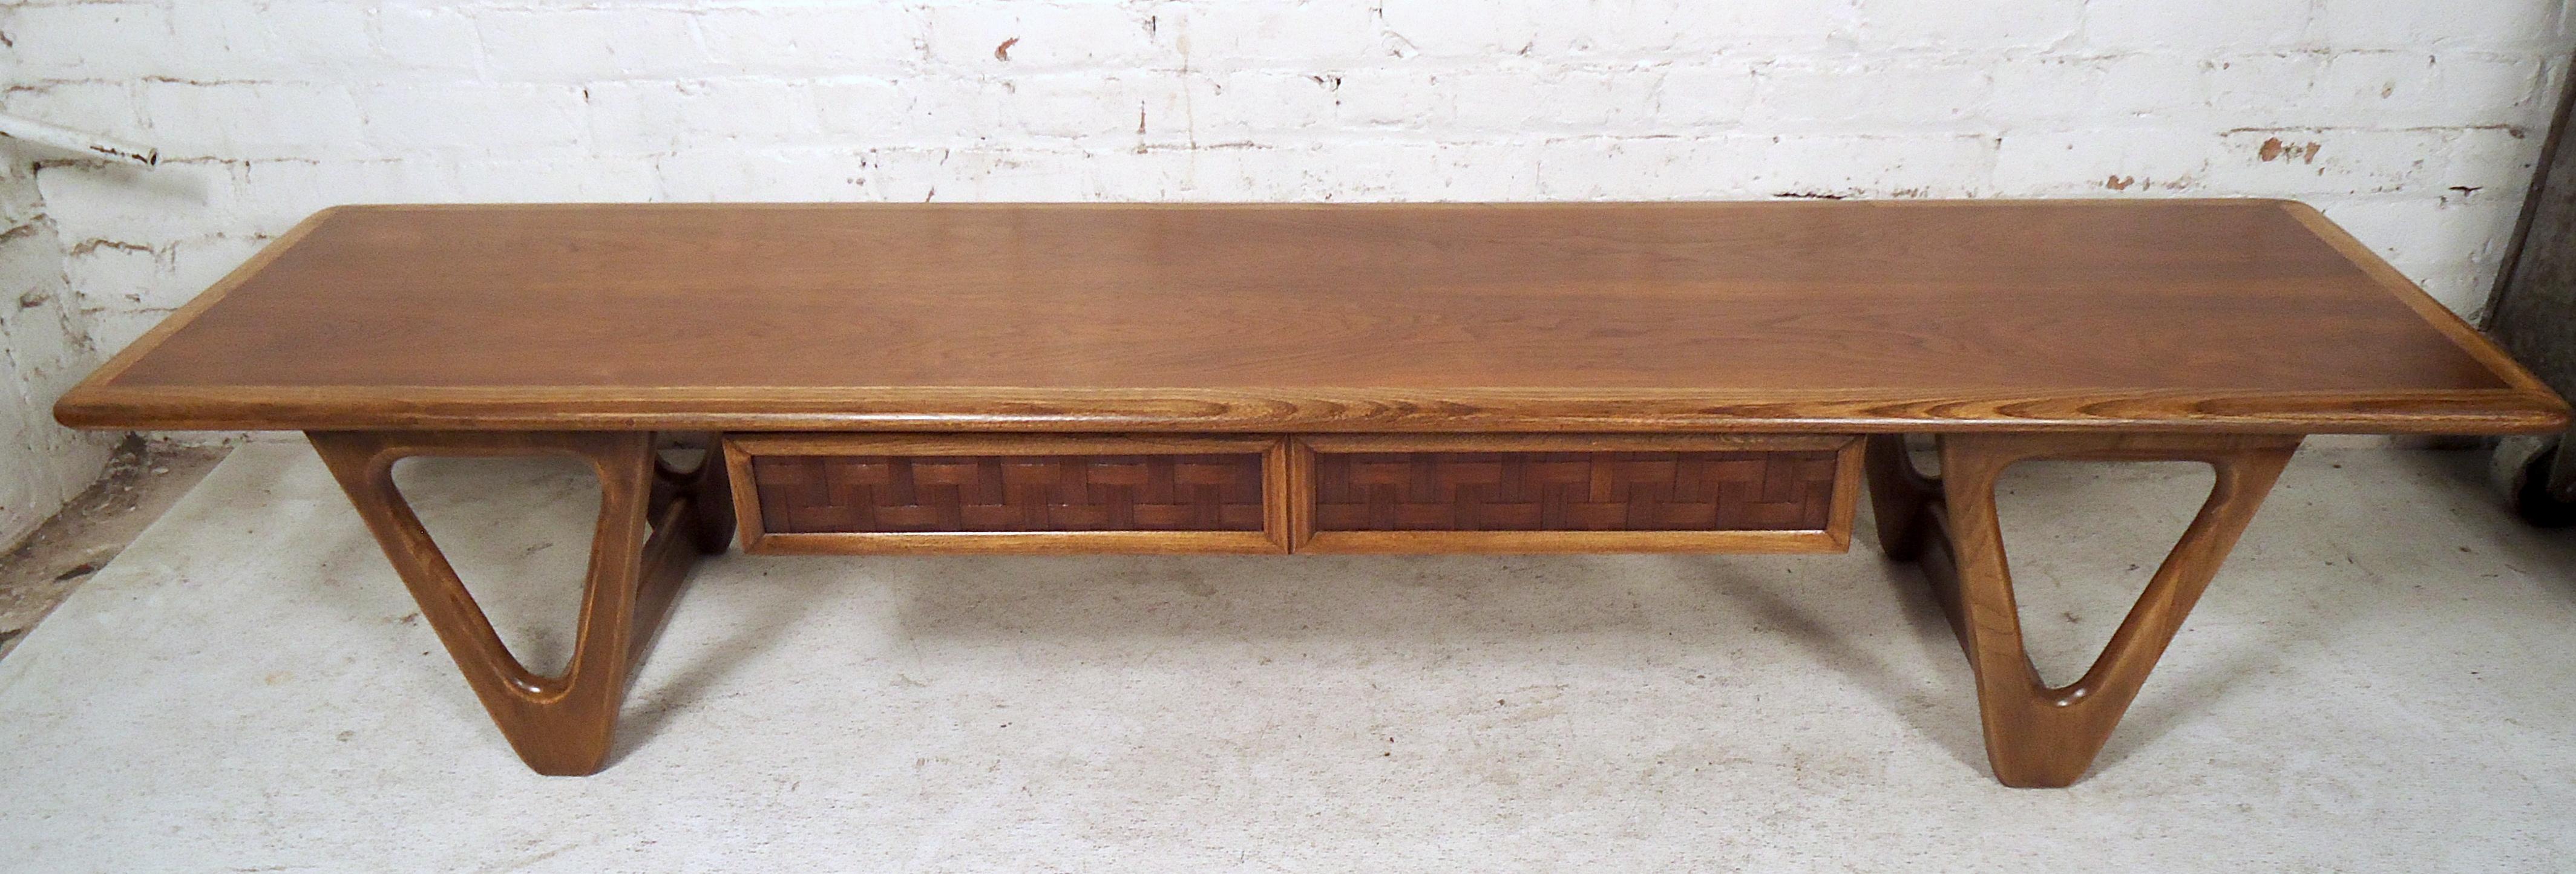 Stilvoller Couchtisch der Lane Furniture Company aus der Jahrhundertmitte, ca. 1960er Jahre. Großzügige Tischfläche, einzigartig geformte Beine, eine Schublade unter der Tischplatte mit einem interessanten Webmuster auf der Schubladenfront.
Bitte